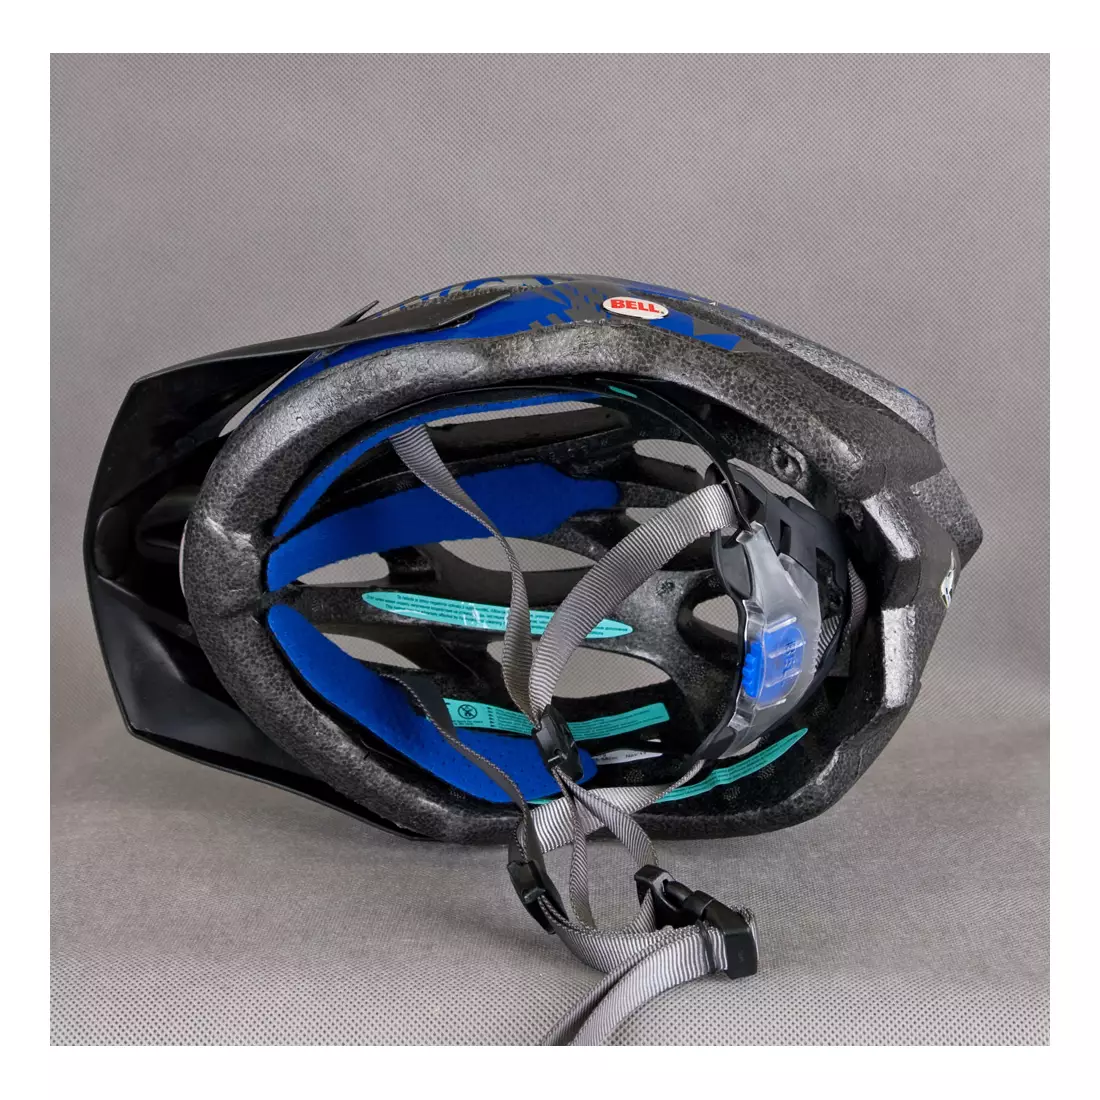 BELL - DELIRIUM blue-titanium bicycle helmet